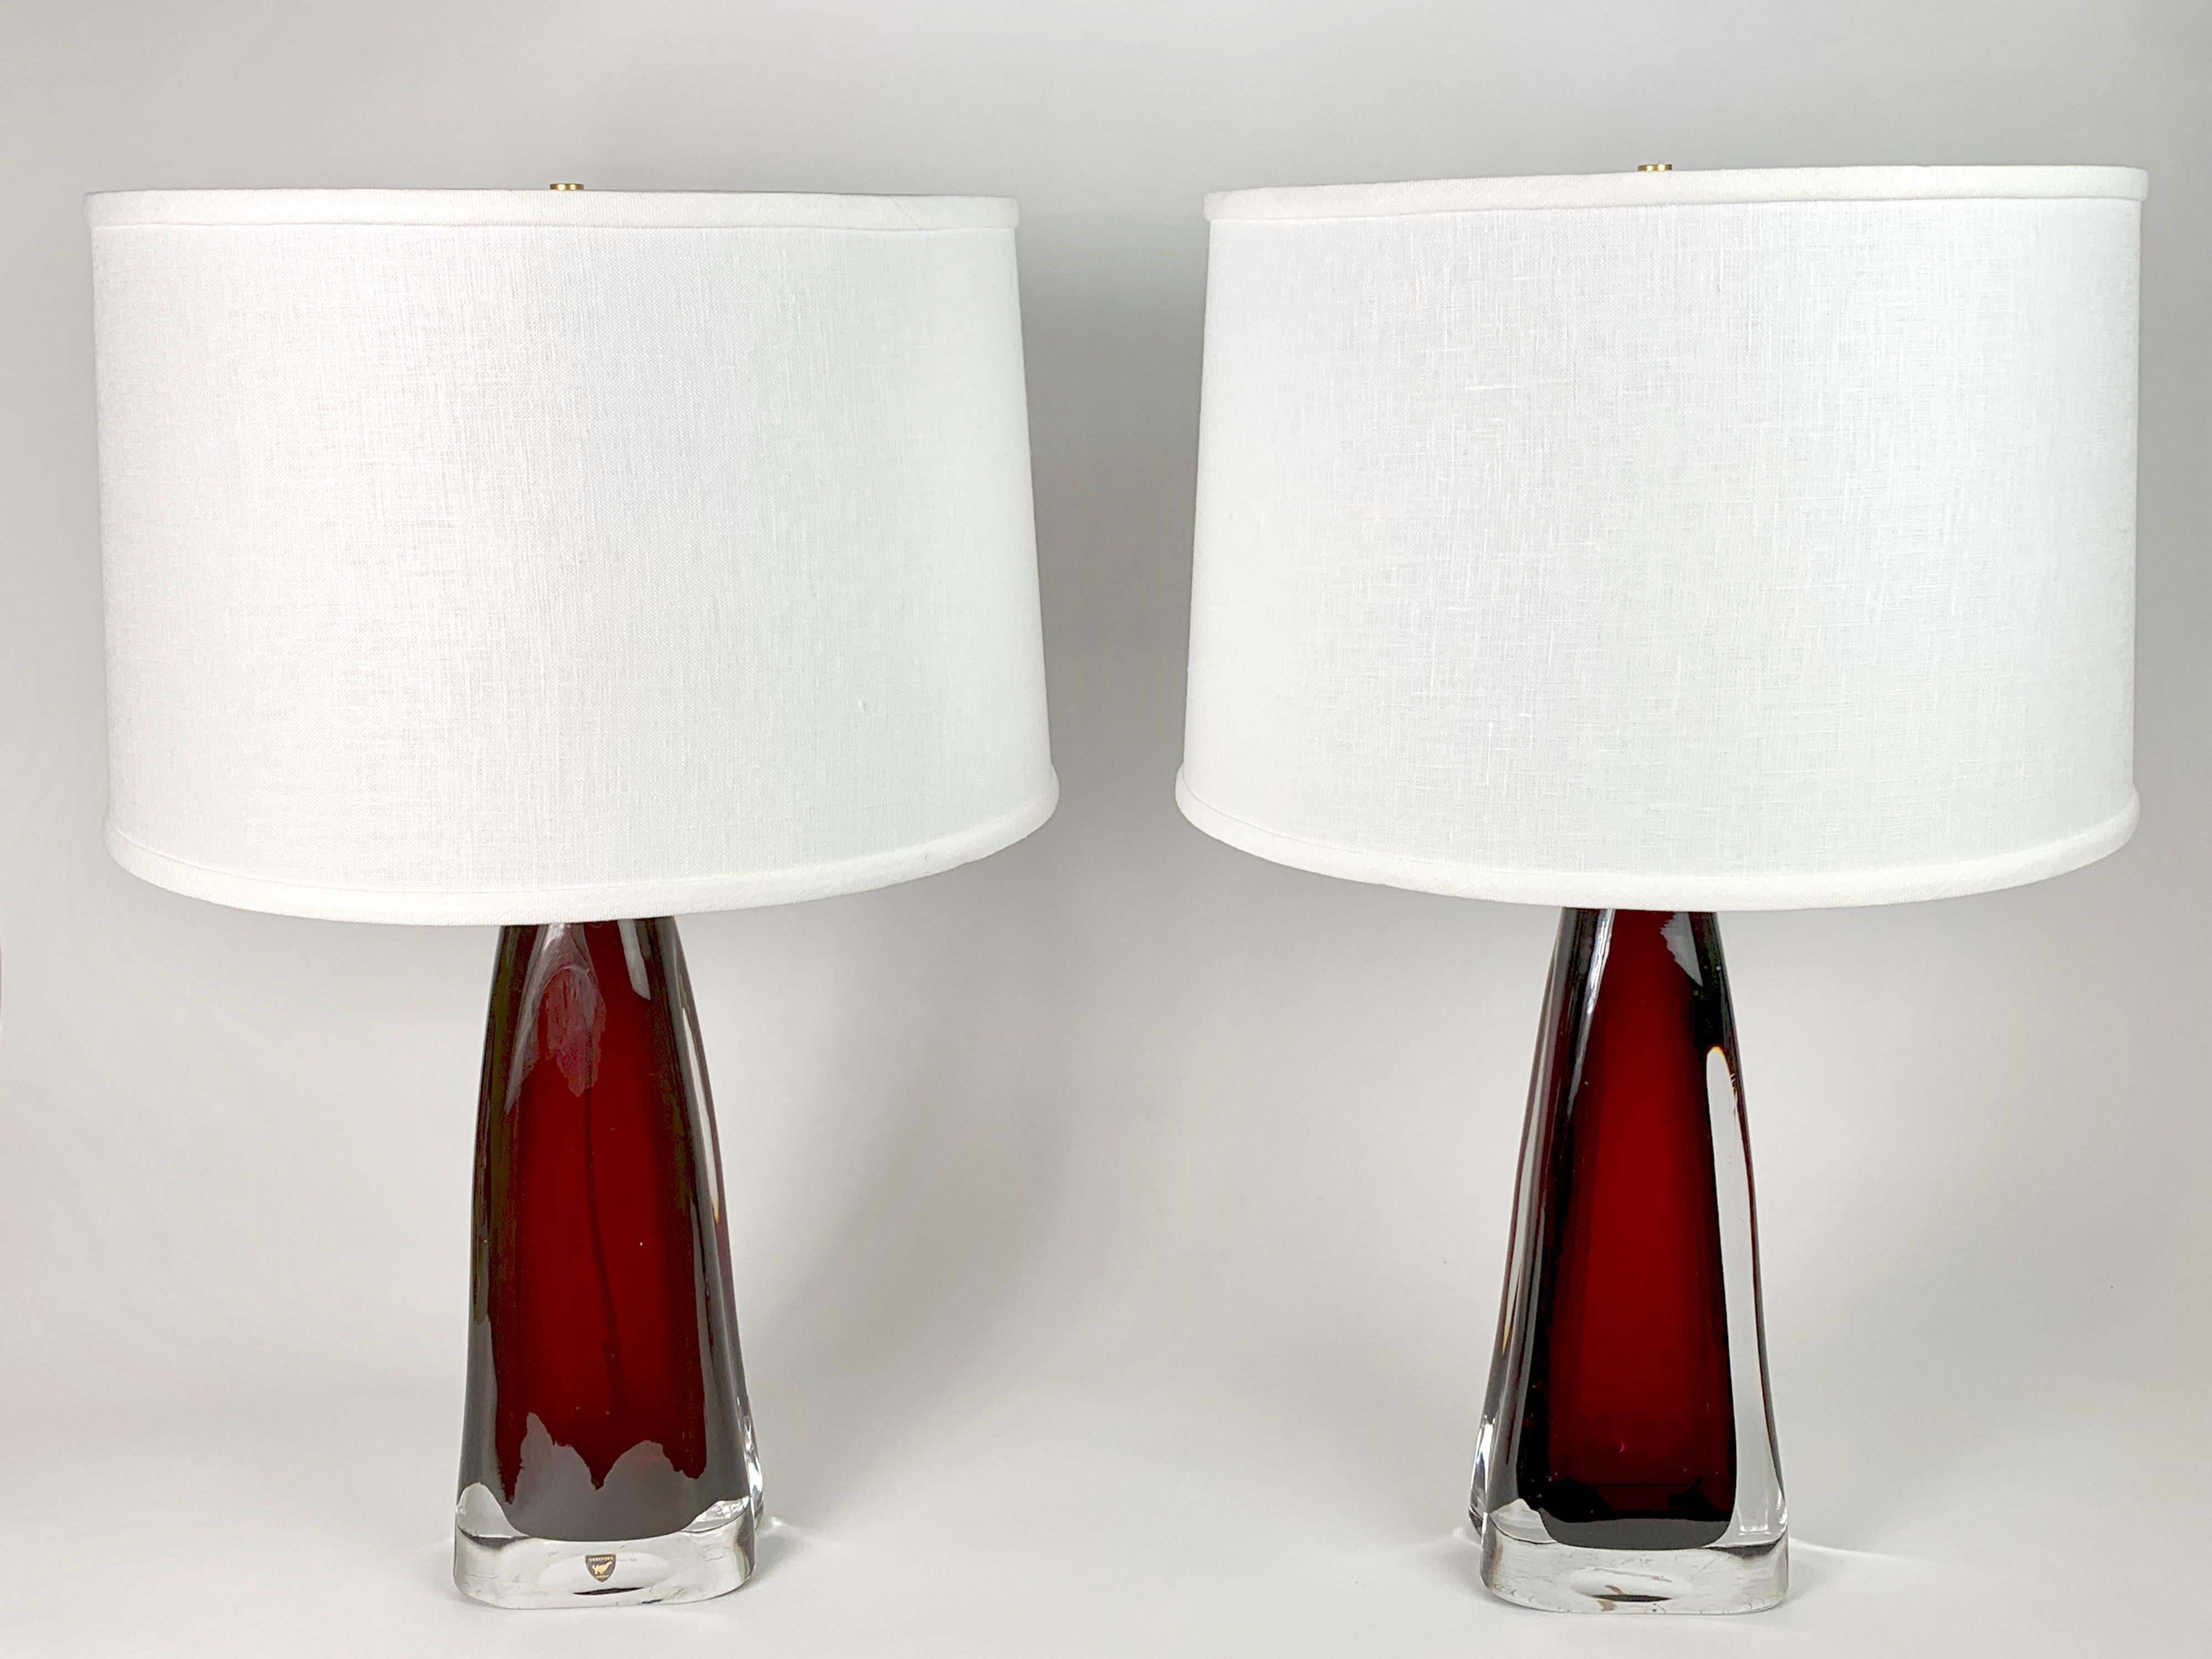 Paire de lampes signées Orrefors en verre rouge rubis avec armatures en laiton conçues par Carl Fagerlund, verre rouge encastré dans une épaisse couche de verre transparent.
Recâblé.

Les abat-jour ne sont pas inclus.